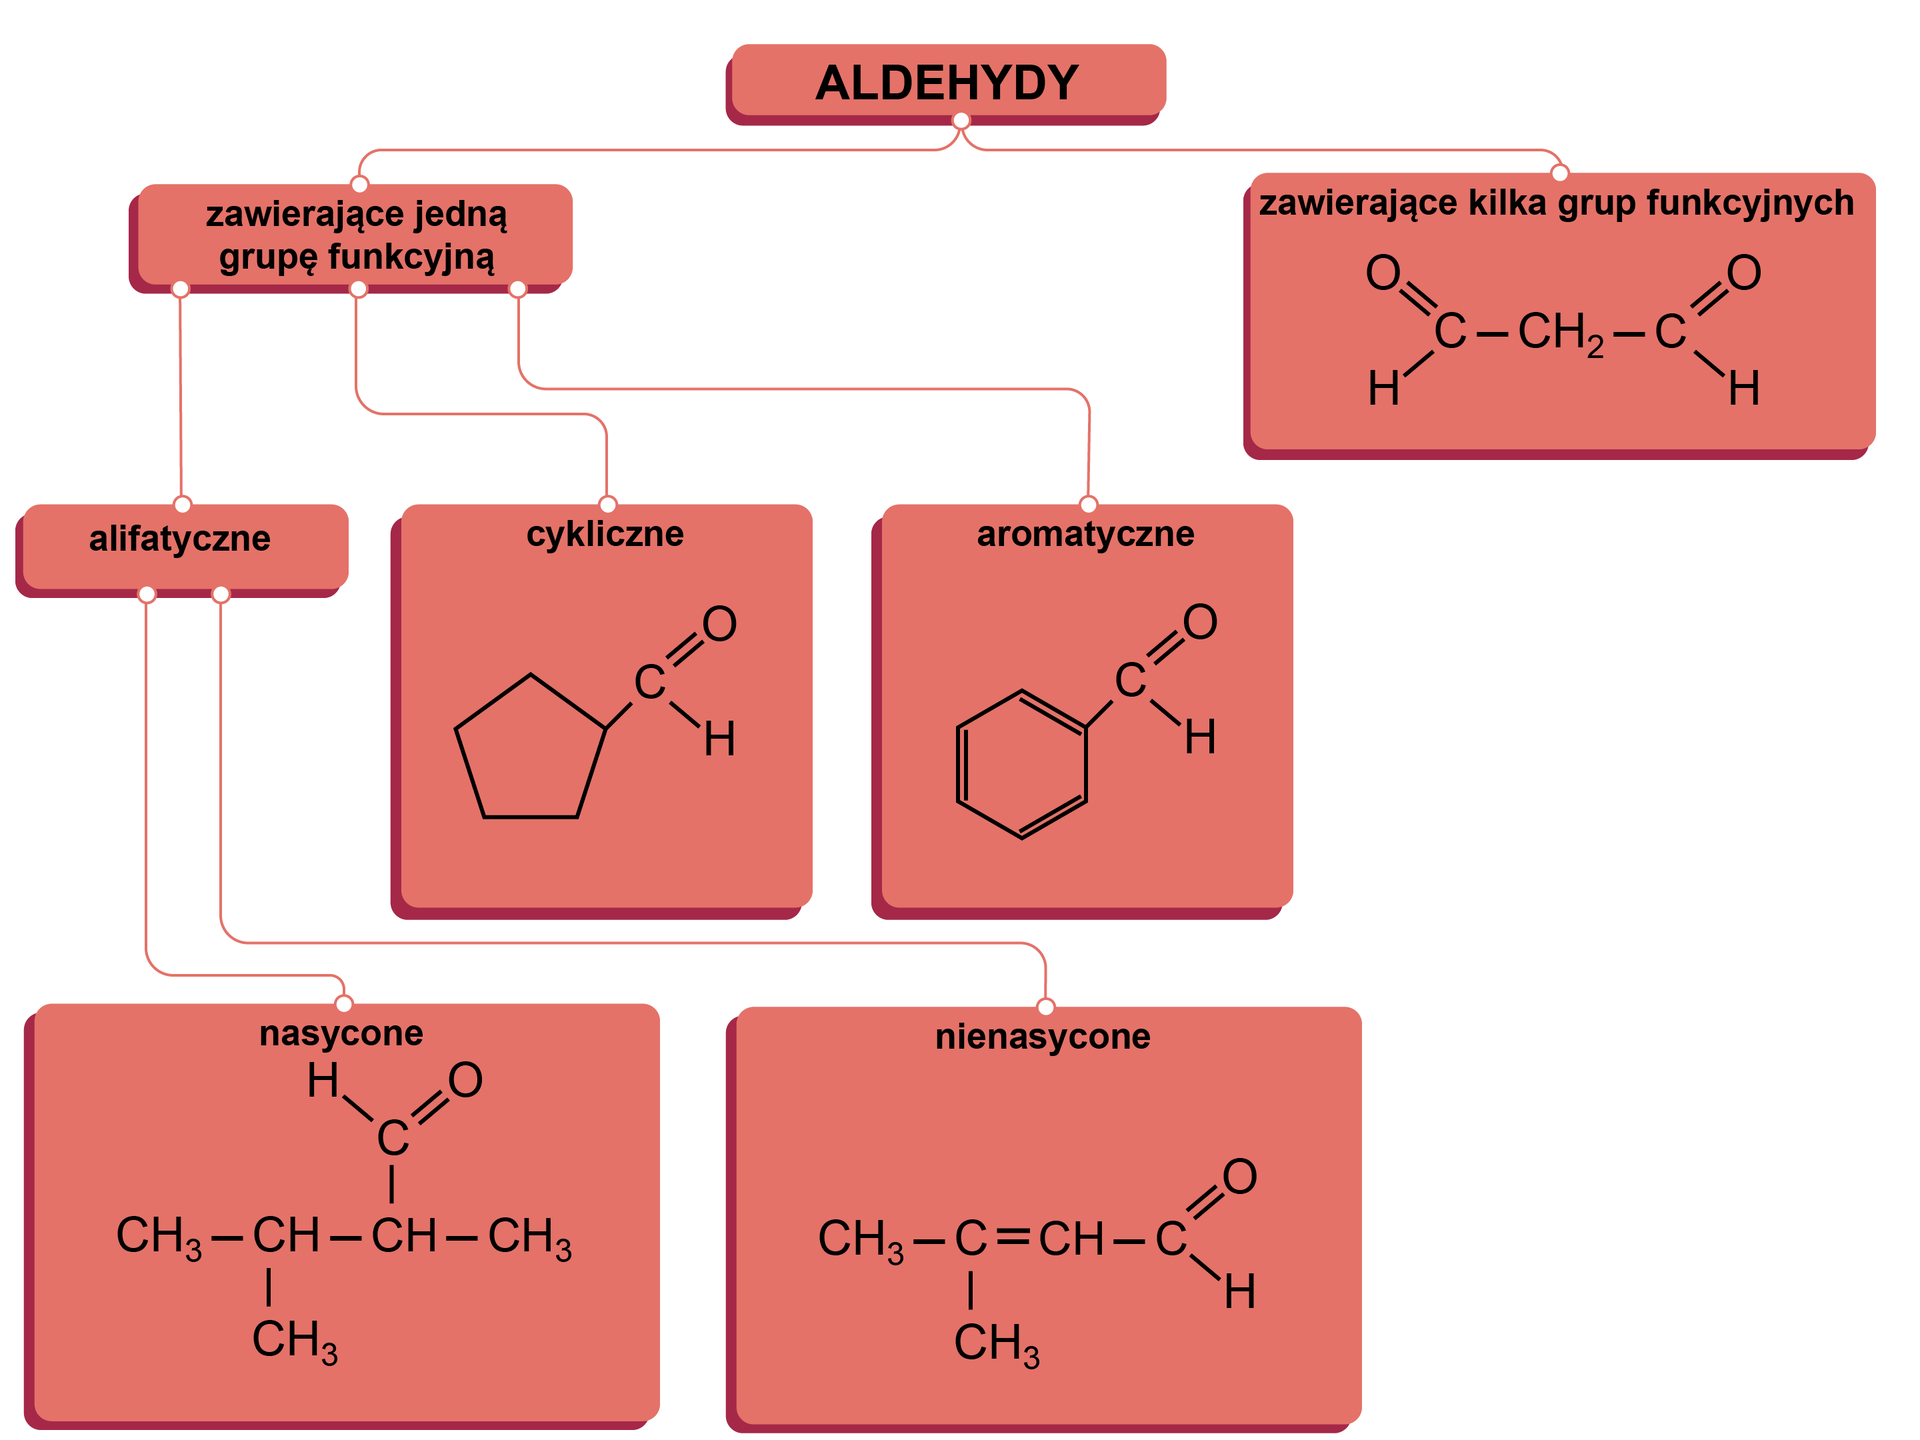 Ilustracja przedstawia przykładowy podział aldehydów. Aldehydy dzielą się na: zawierające kilka grup funkcyjnych - tu wzór: grupa metylenowa łączy się po lewej i prawej stronie z grupą CHO, i zawierające jedną grupę funkcyjną. Te dzielą się na cykliczne, aromatyczne i alifatyczne. Przykład aldehydu cyklicznego ma wzór: pięcioczłonowy pierścień łączy się z prawej strony z grupą CHO. Przykład aldehydu aromatycznego ma wzór: sześcioczłonowy pierścień z trzema wiązaniami podwójnymi łączy się po prawej stronie z grupą CHO. Aldehydy alifatyczne dzielą się na nasycone i nienasycone. Przykład aldehydu alifatycznego nasyconego ma wzór: od lewej strony - grupa metylowa łączy się z grupą CH. Ta na dole łączy się z grupą metylową, a po prawej stronie z grupą CH. Grupa CH na górze łączy się z grupą CHO, a po prawej stronie z grupą metylową. Przykład aldehydu alifatycznego nienasyconego ma wzór: od lewej strony - grupa metylowa łączy się z atomem węgla. Atom węgla łączy się na dole z grupą metylową, a wiązaniem podwójnym po prawej stronie z grupą CH. Ta z kolei łączy się po prawej stronie z grupą CHO.     